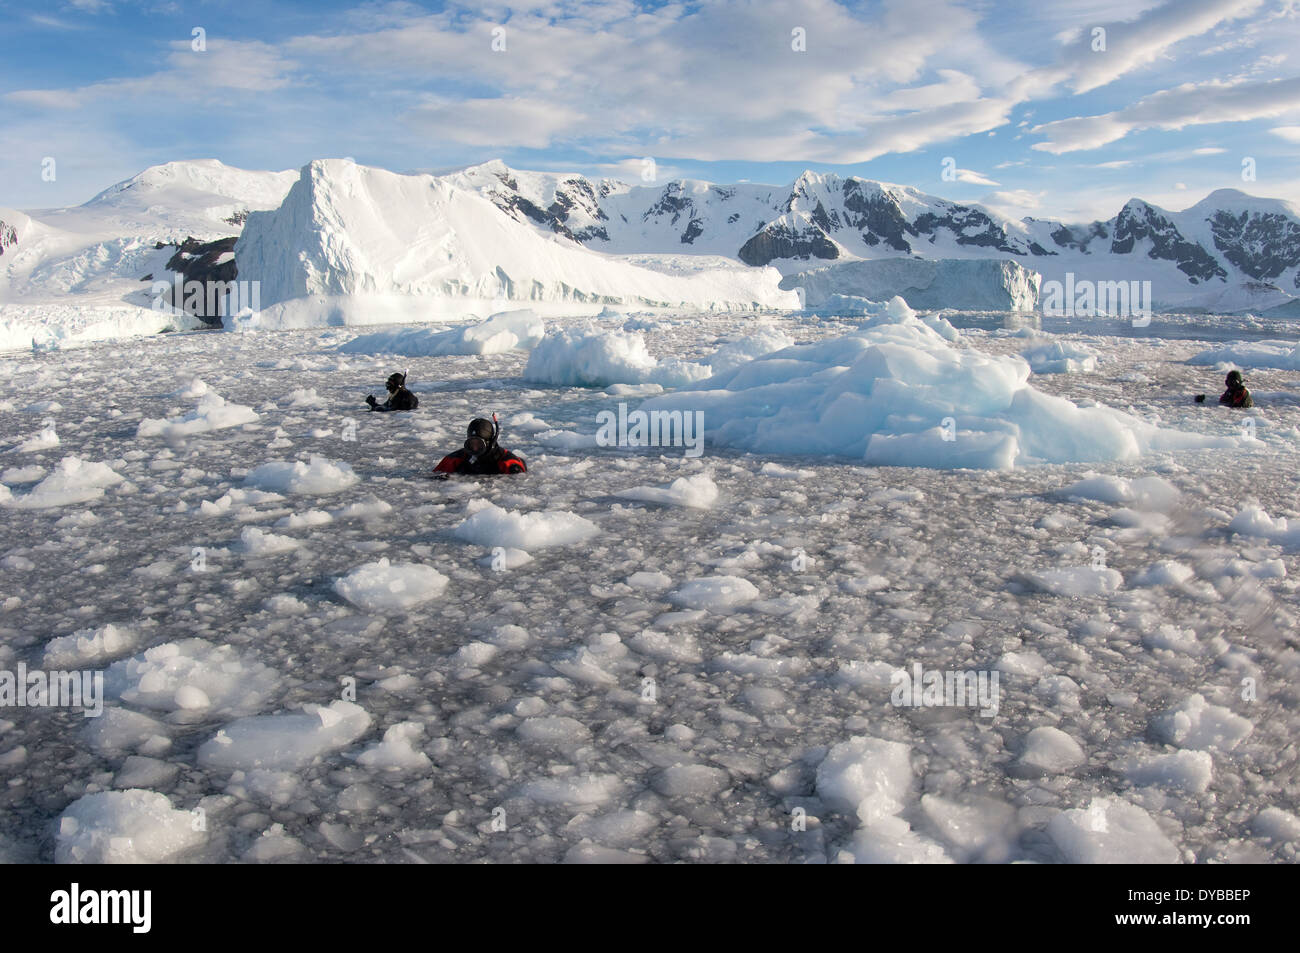 Des cinéastes, des photographes et des scientifiques au travail dans l'Île Danco derrière brash, l'Antarctique, au cours de l'expédition de l'Elysium. Banque D'Images